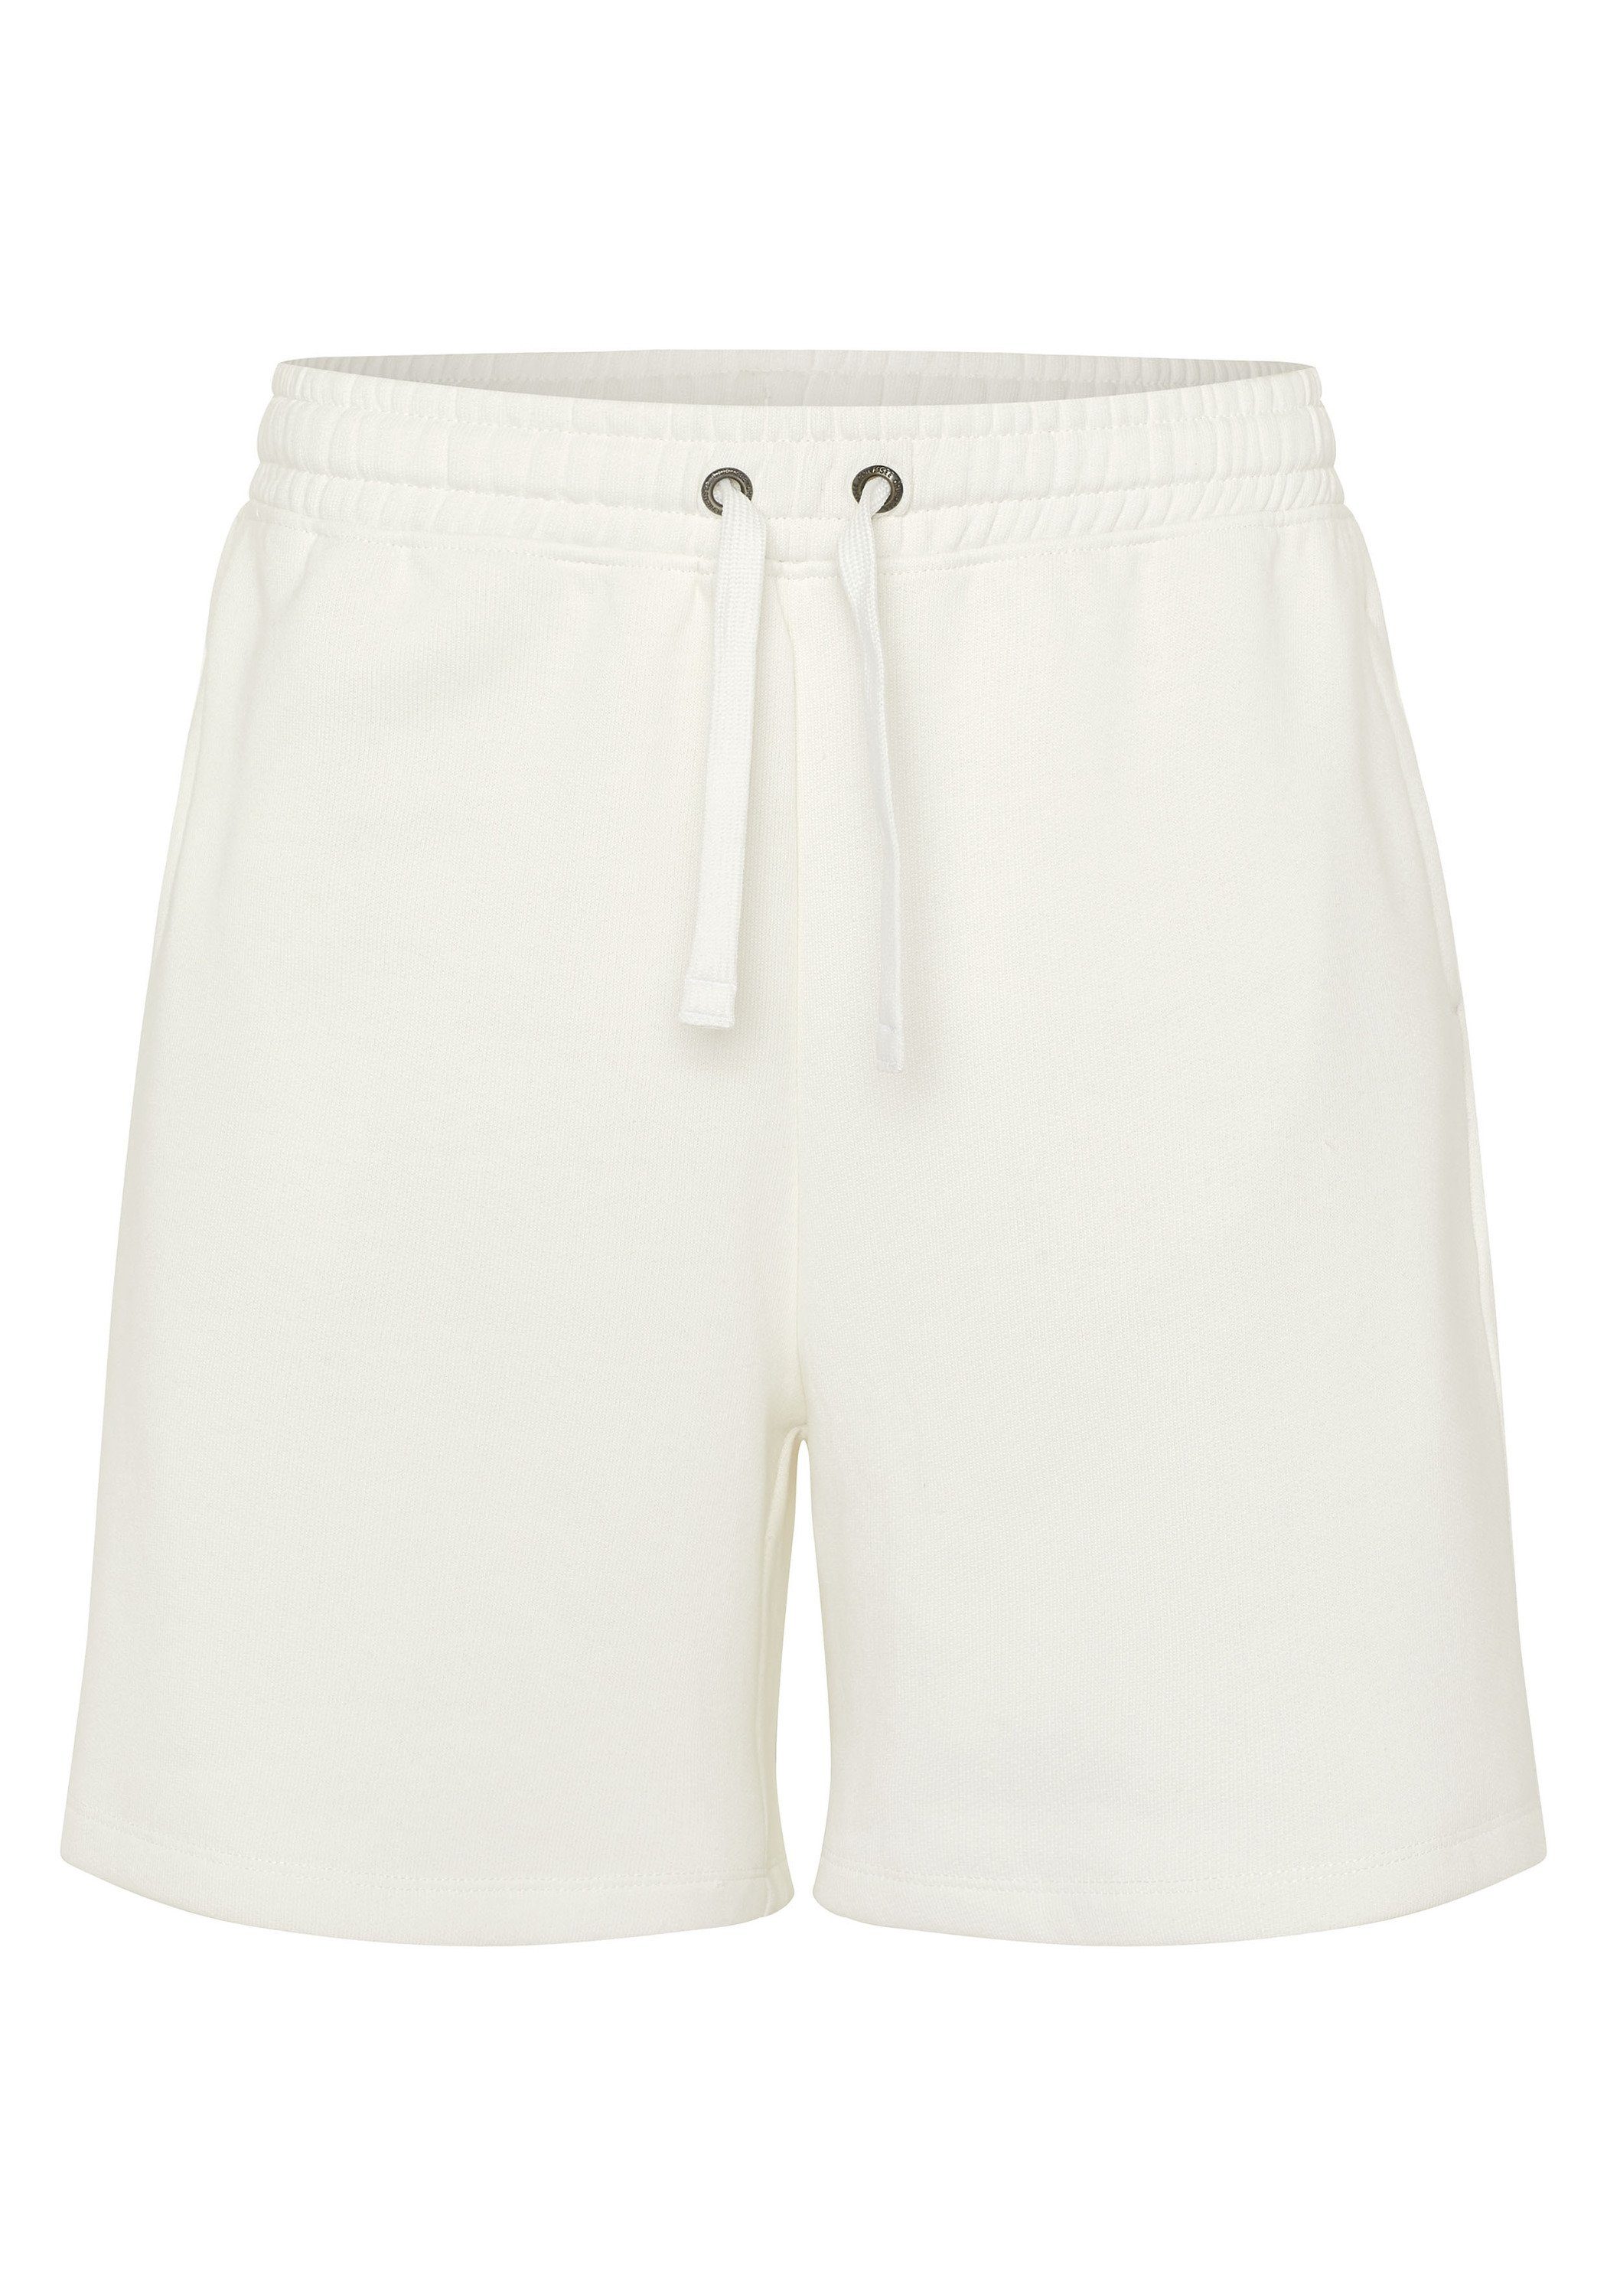 Chiemsee Sweatshorts Shorts mit Label-Stickerei hinten 1